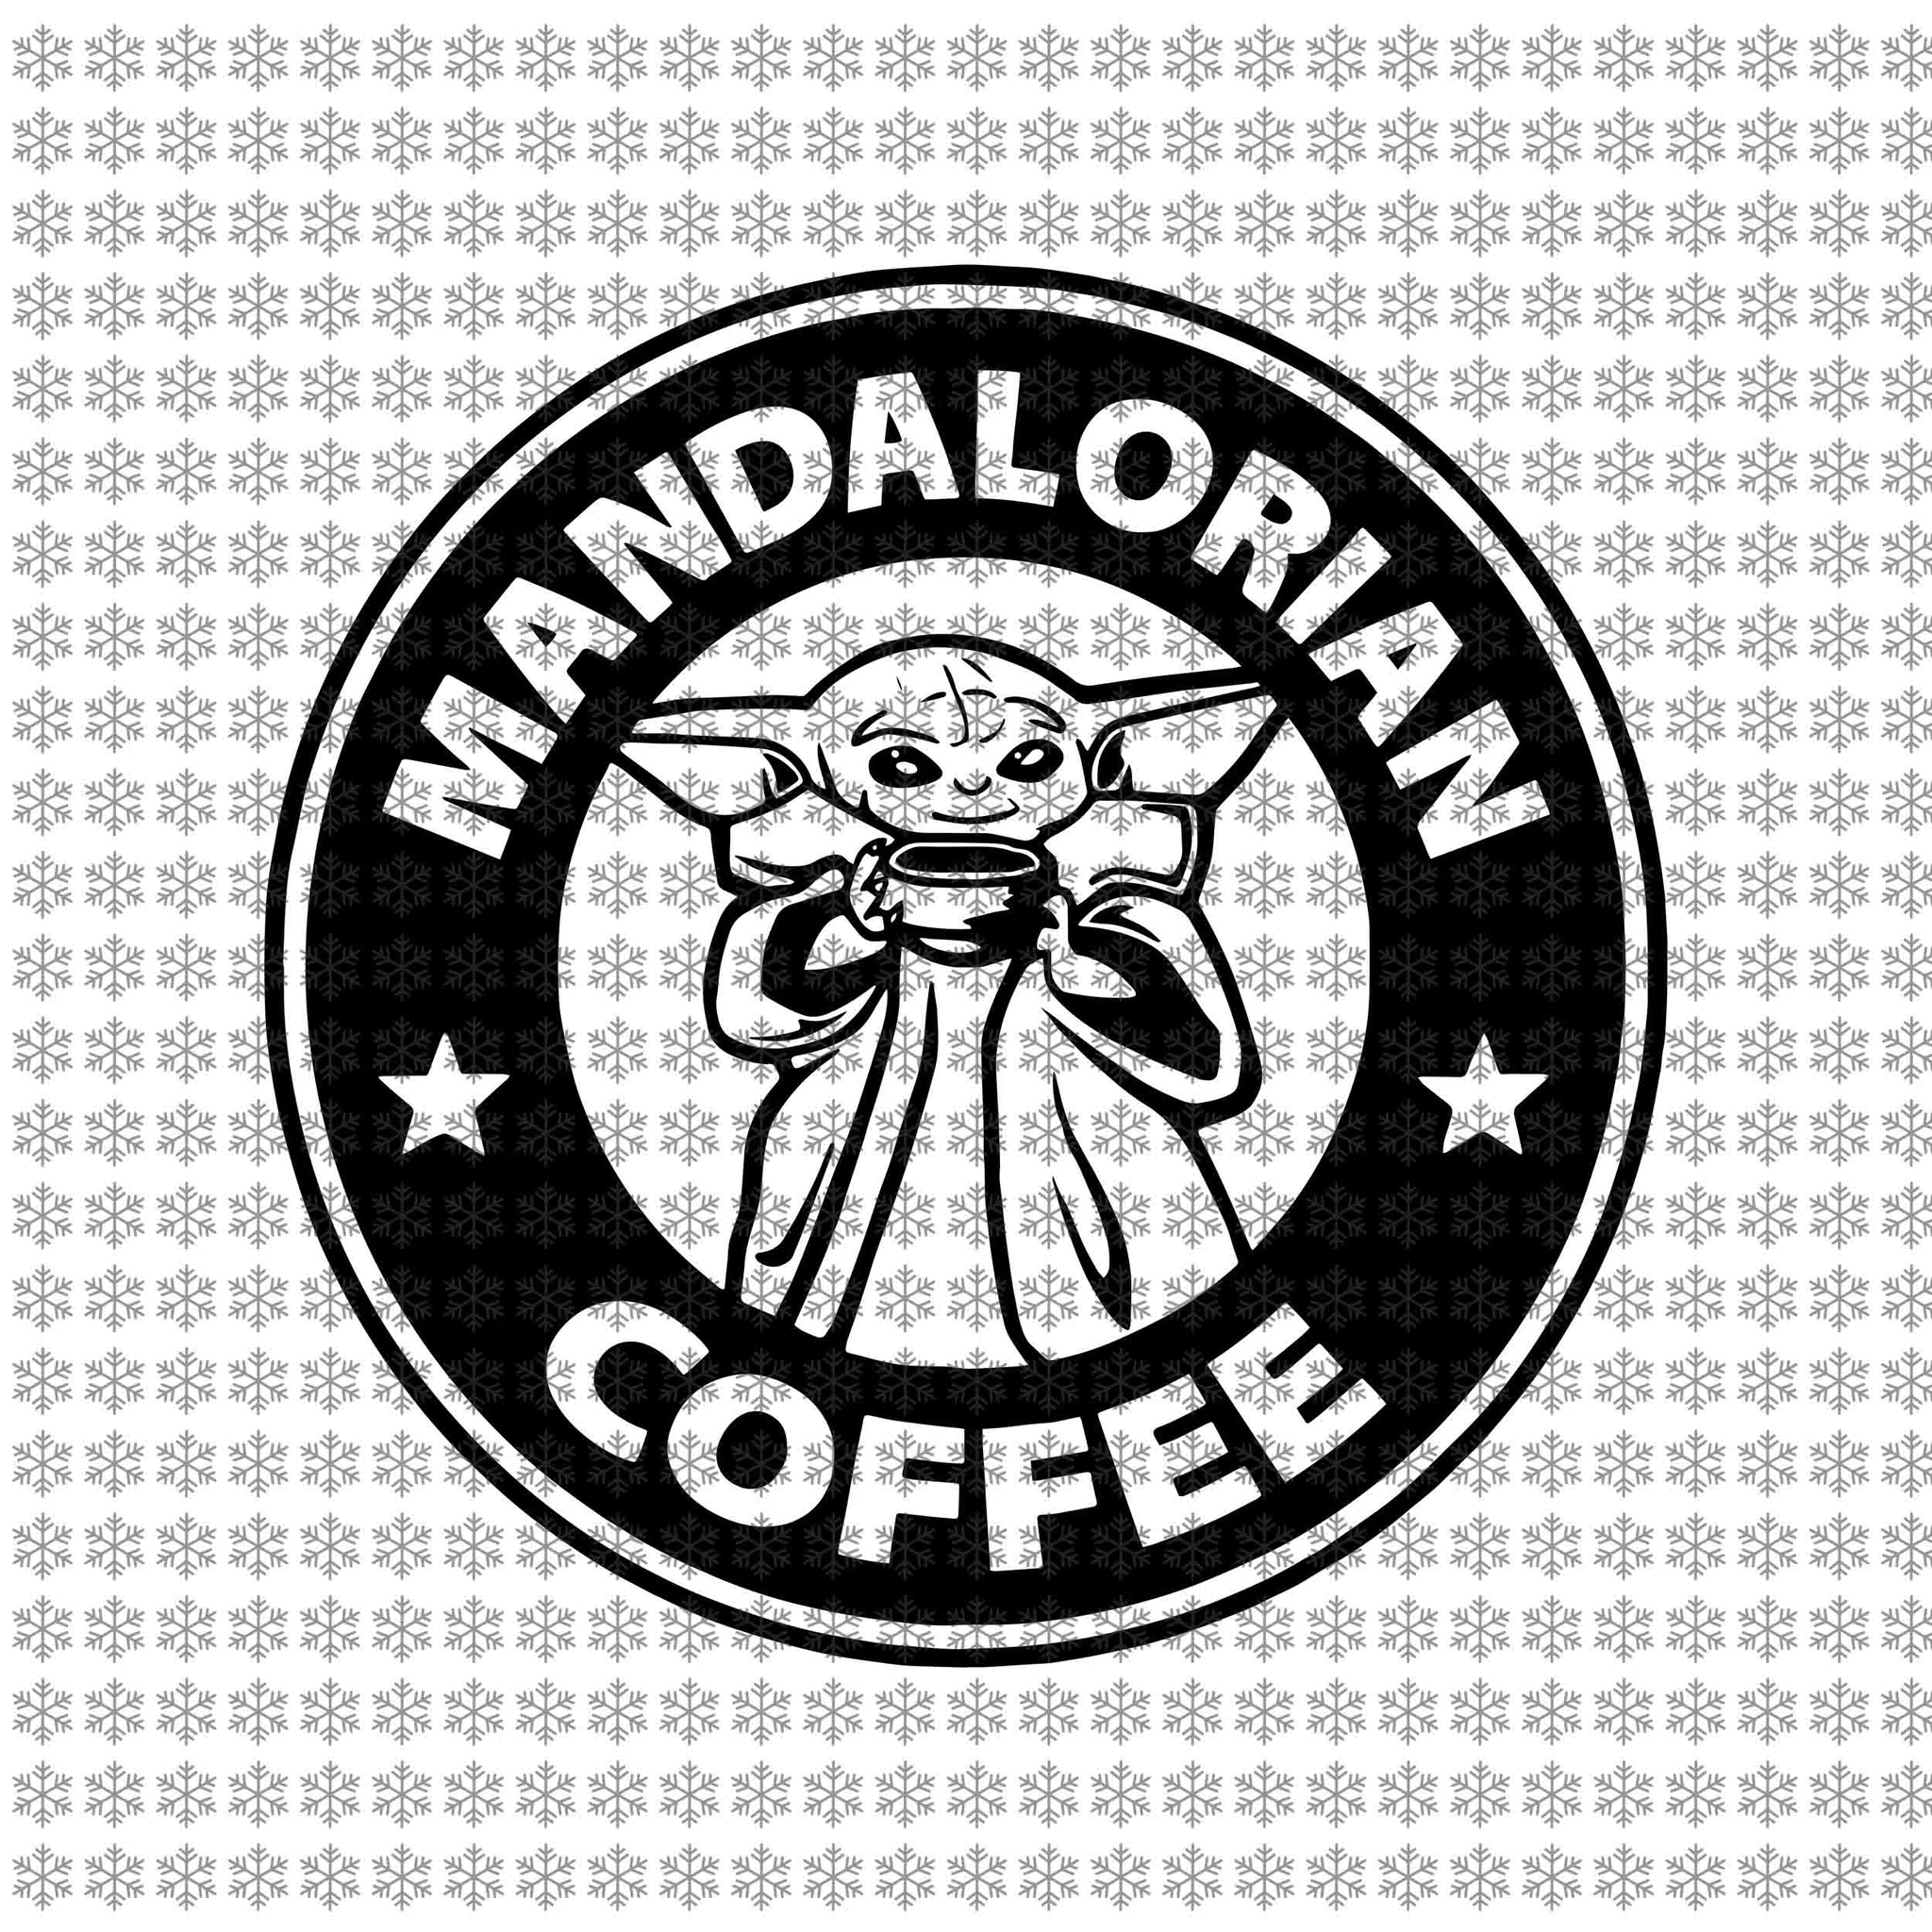 Mandalorian coffee, Baby yoda svg, baby yoda vector, baby yoda digital file, star wars svg, star wars vector, The Mandalorian the child svg